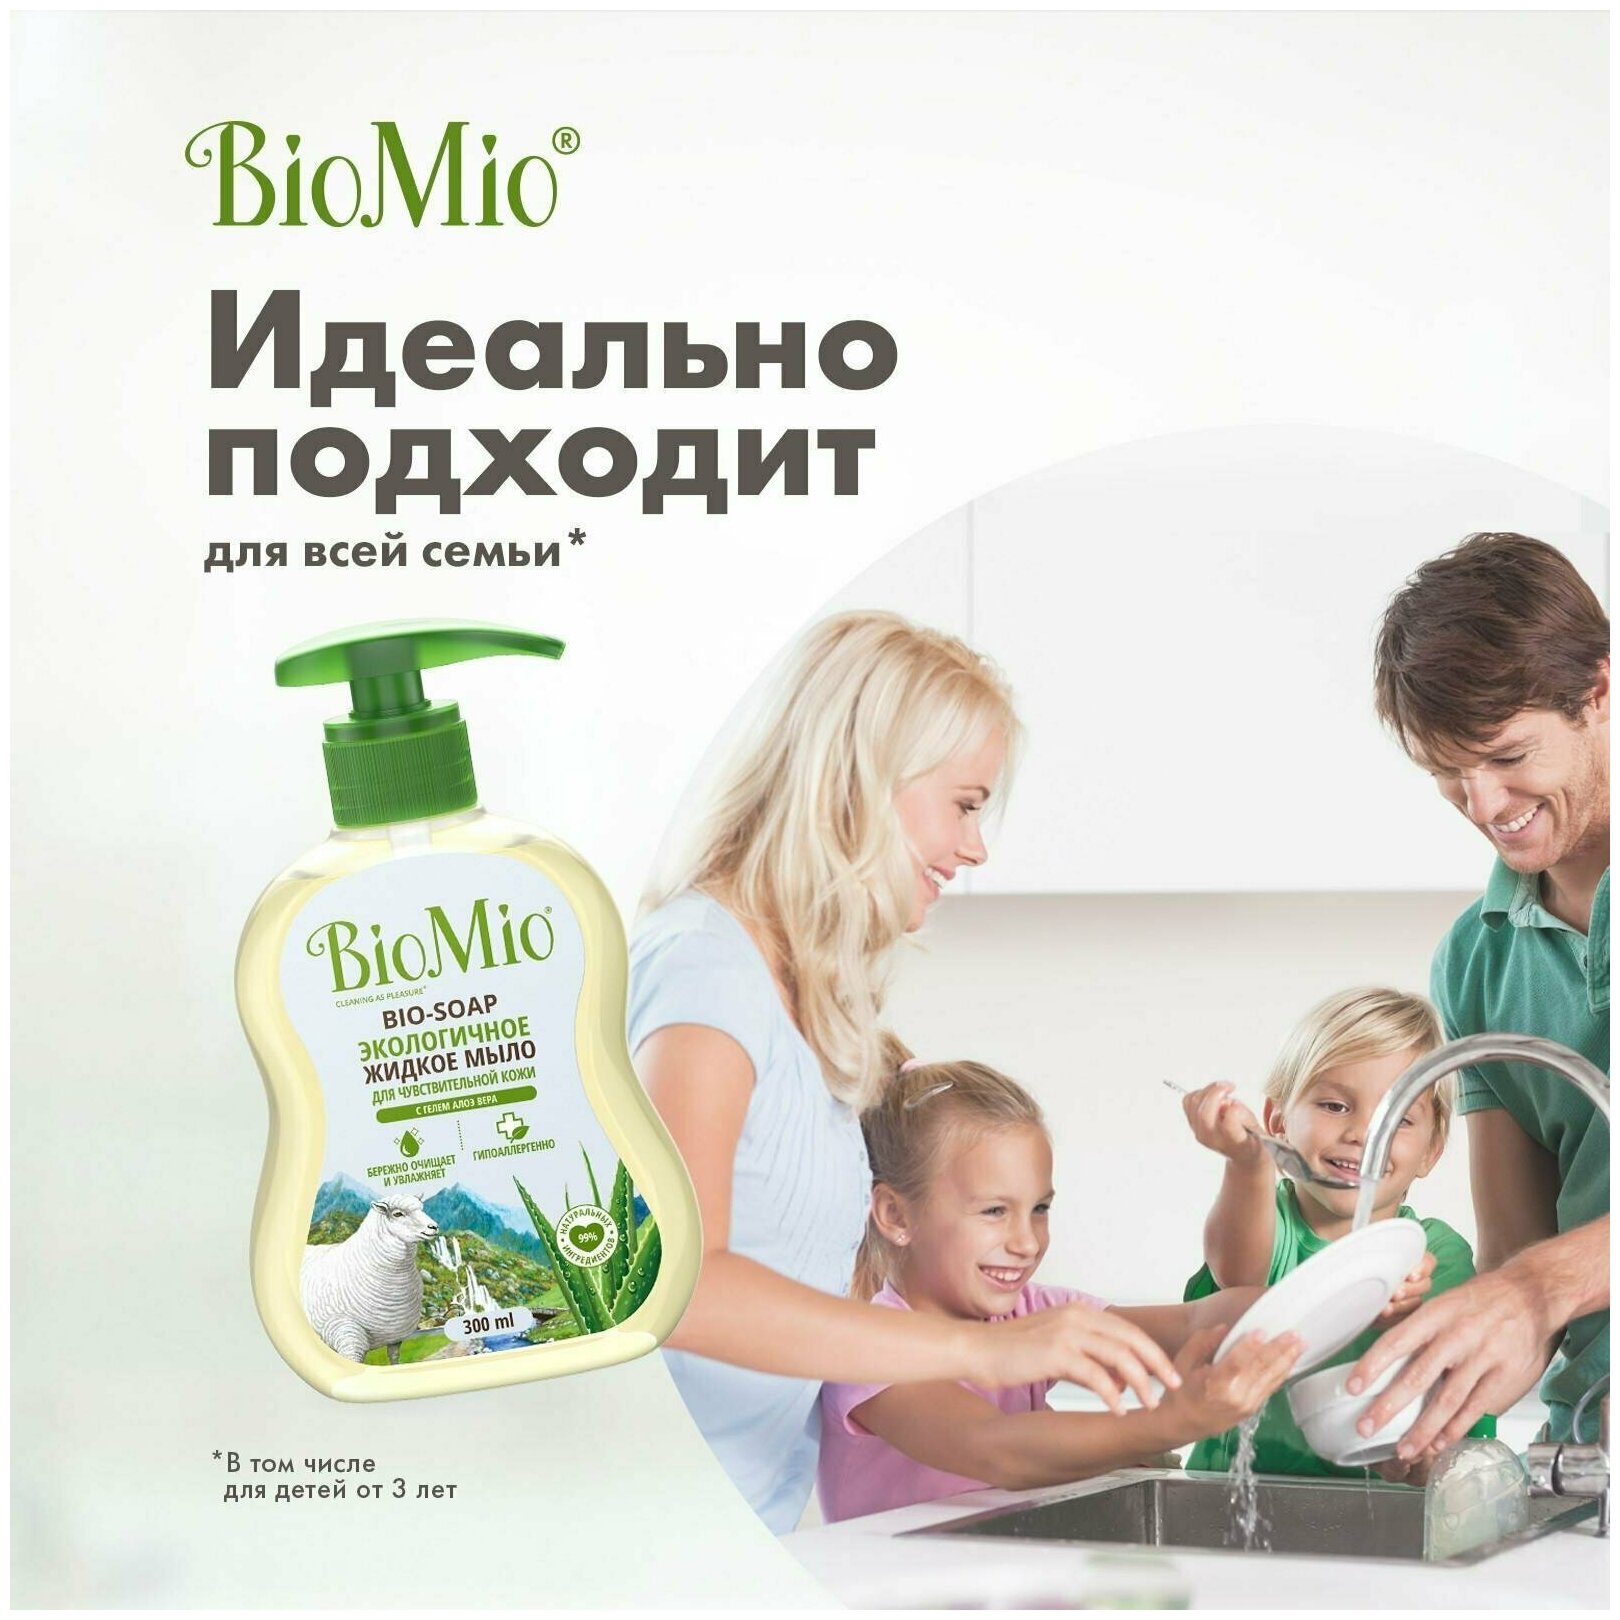 Жидкое мыло BioMio Bio-Soap с алое-вера, гипоаллергенное, увлажняющее, с дозатором, 300 мл х 2 шт